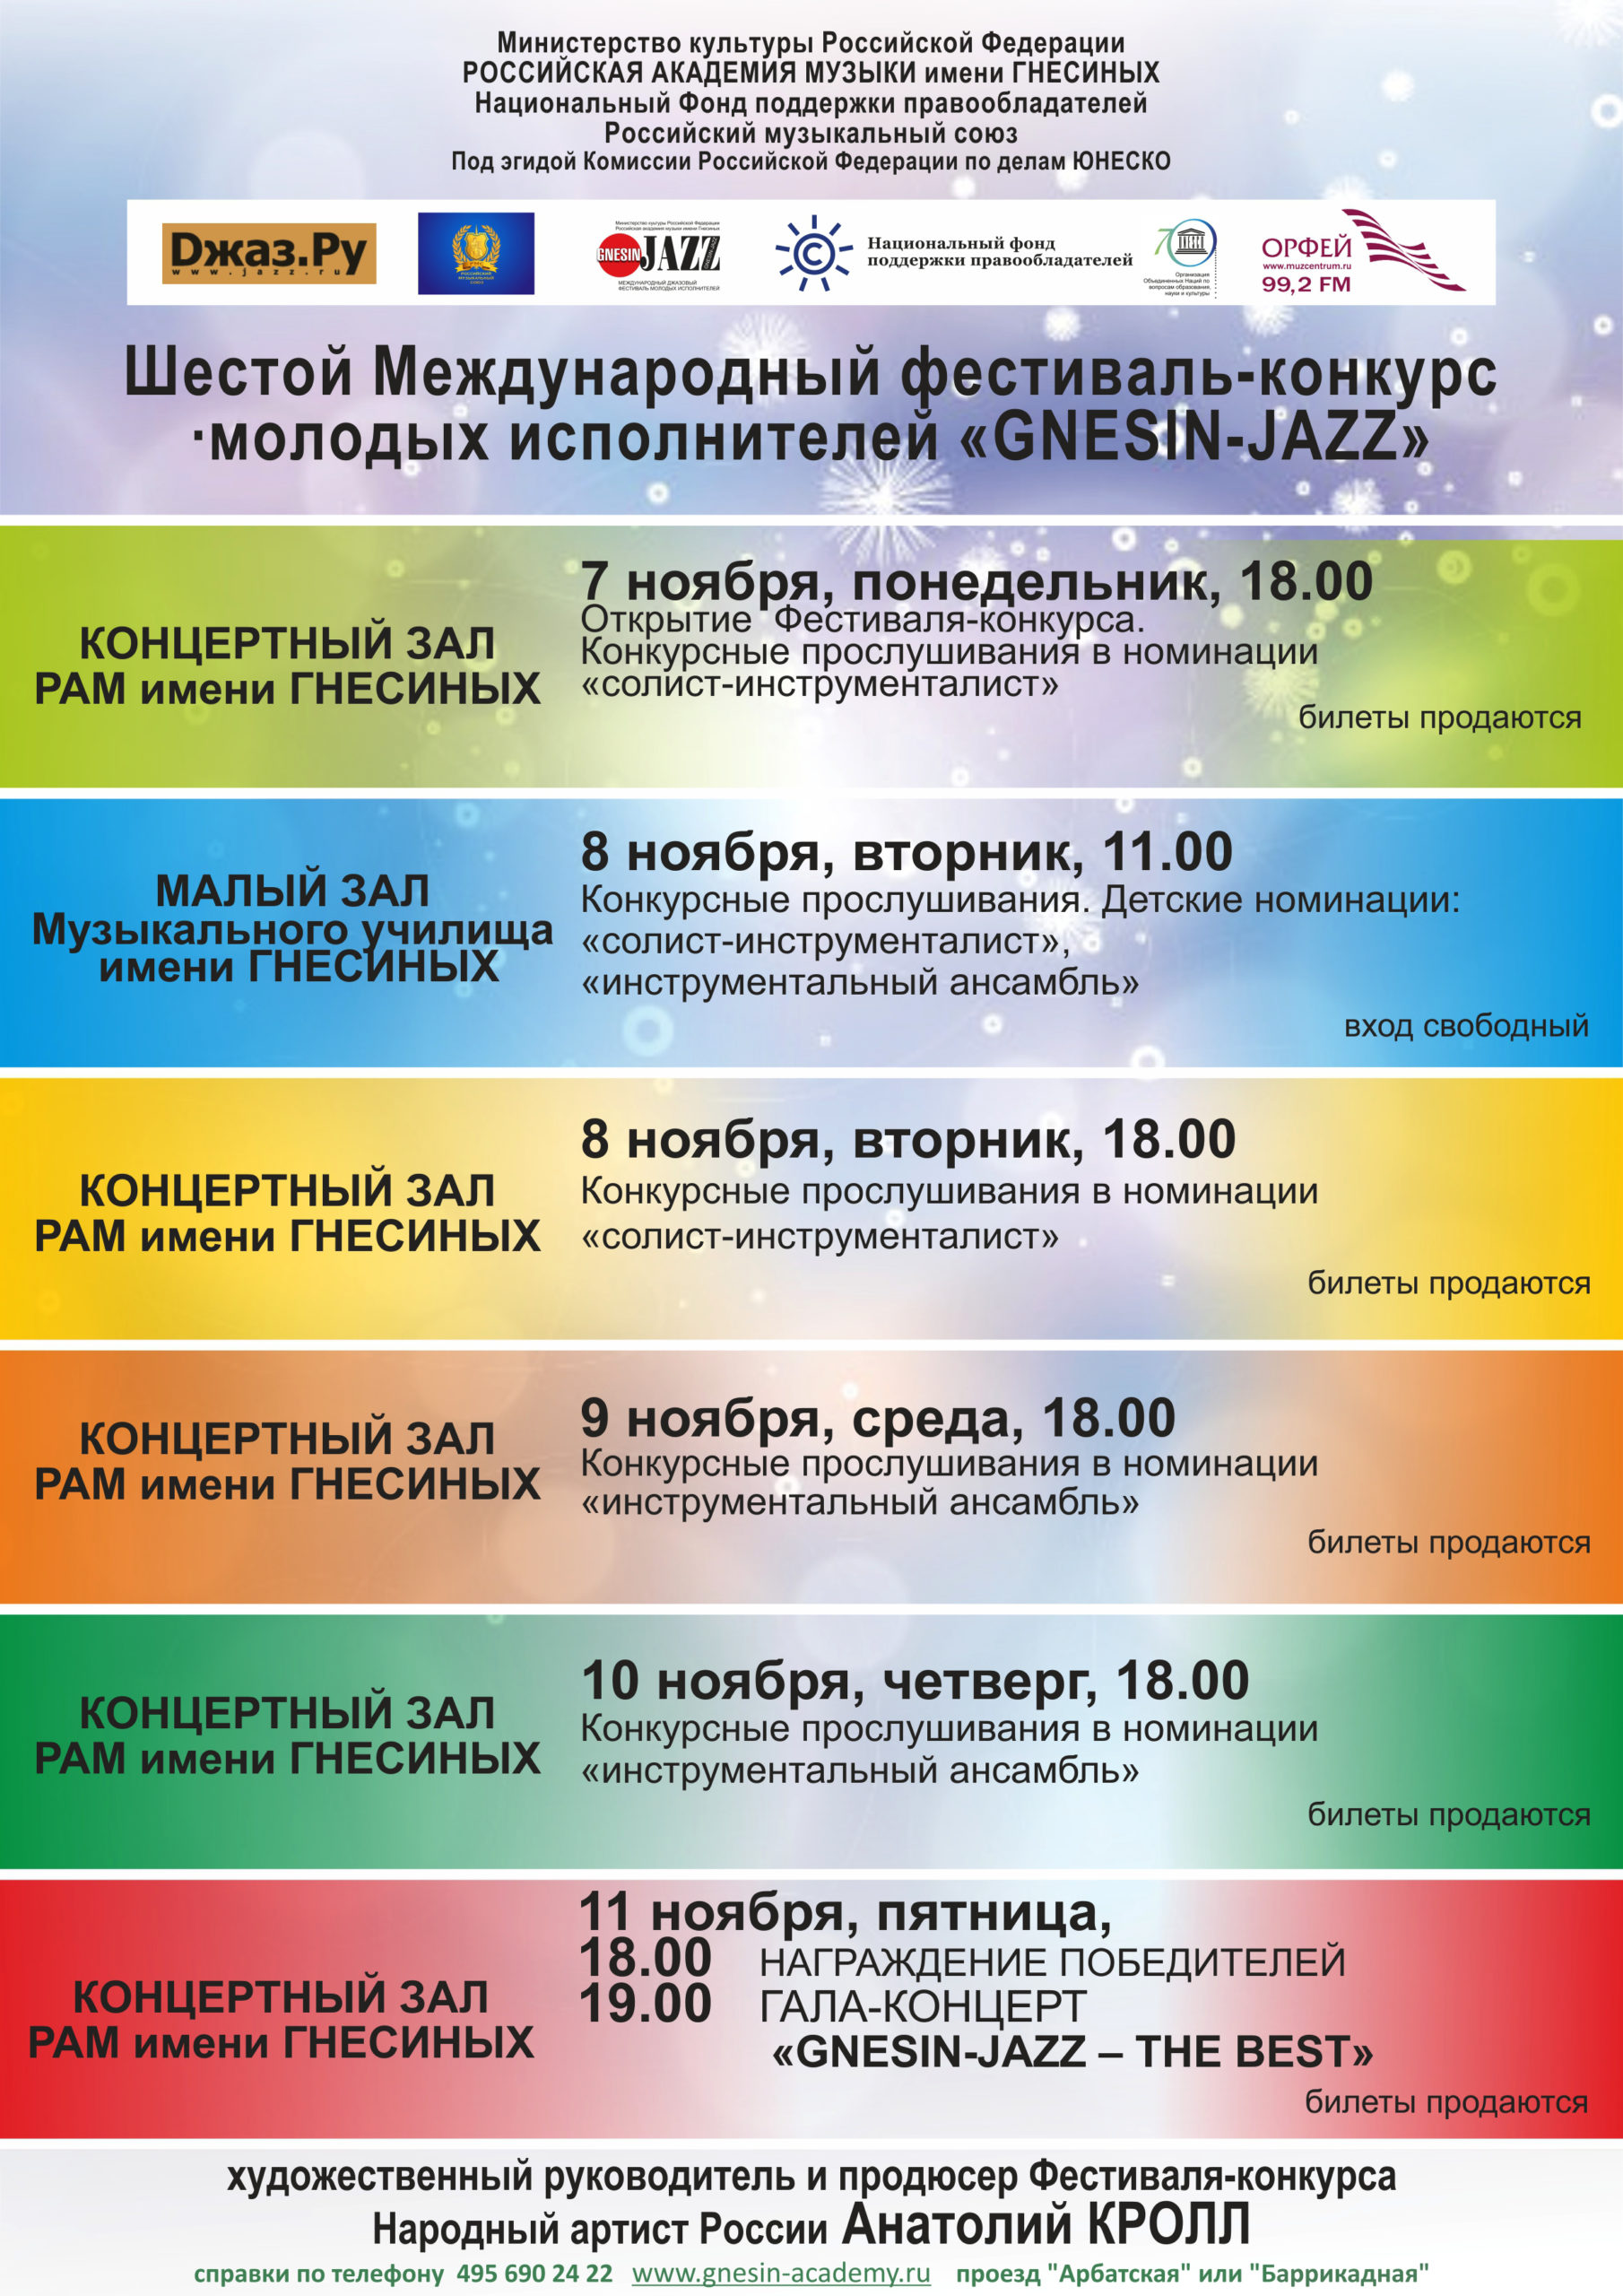 Фестиваль-конкурс «Gnesin-Jazz» пройдет при поддержке НФПП